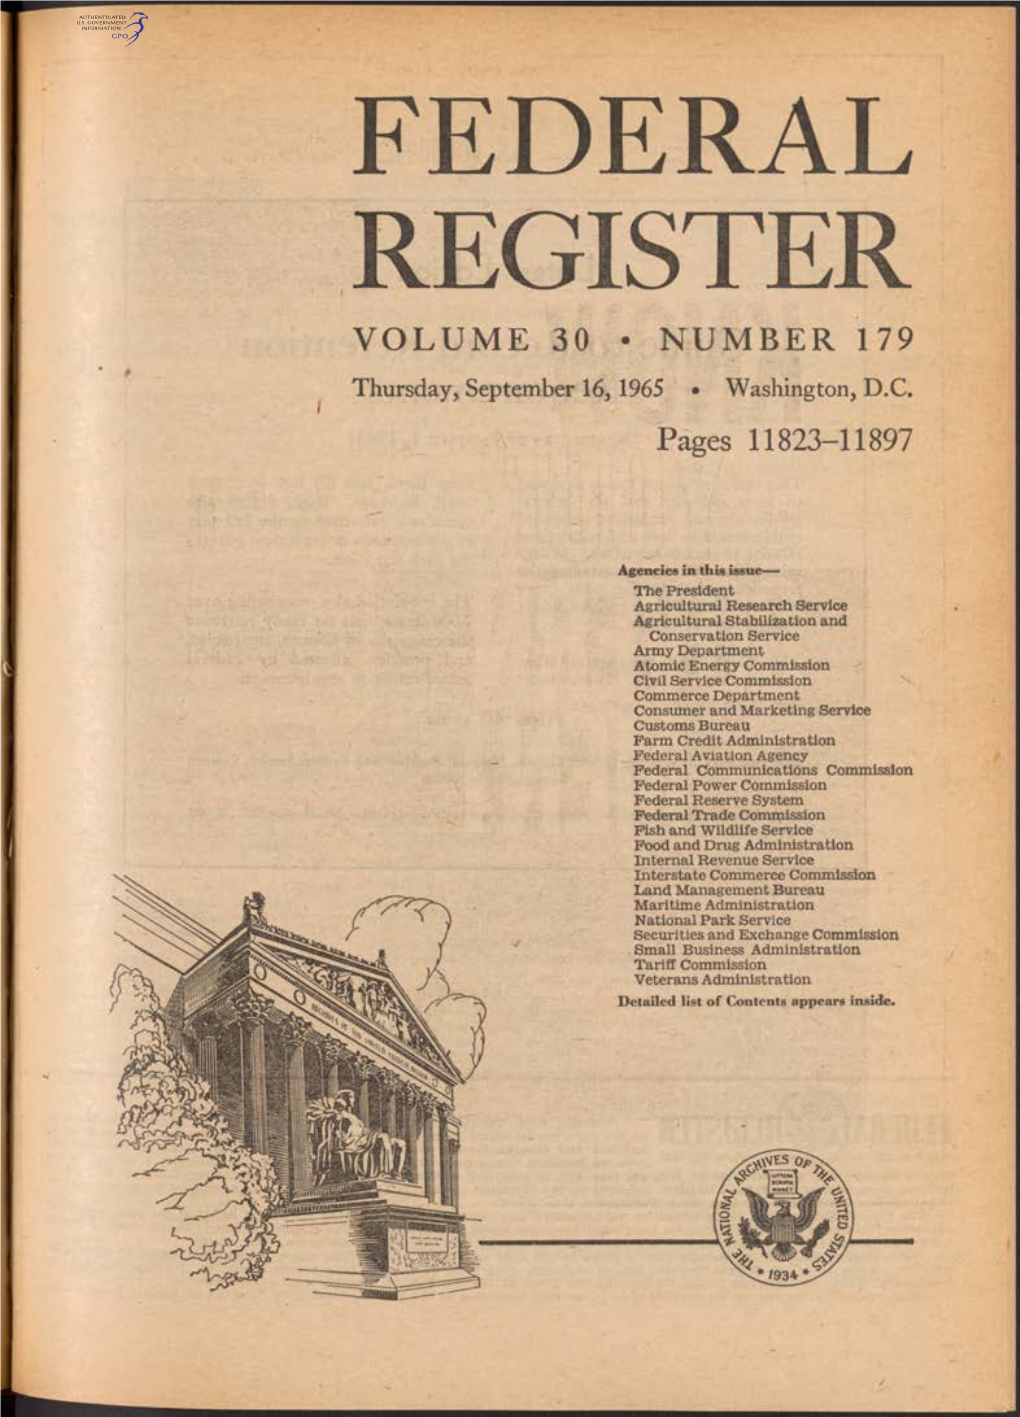 Federal Register Volume 30 » Number 179